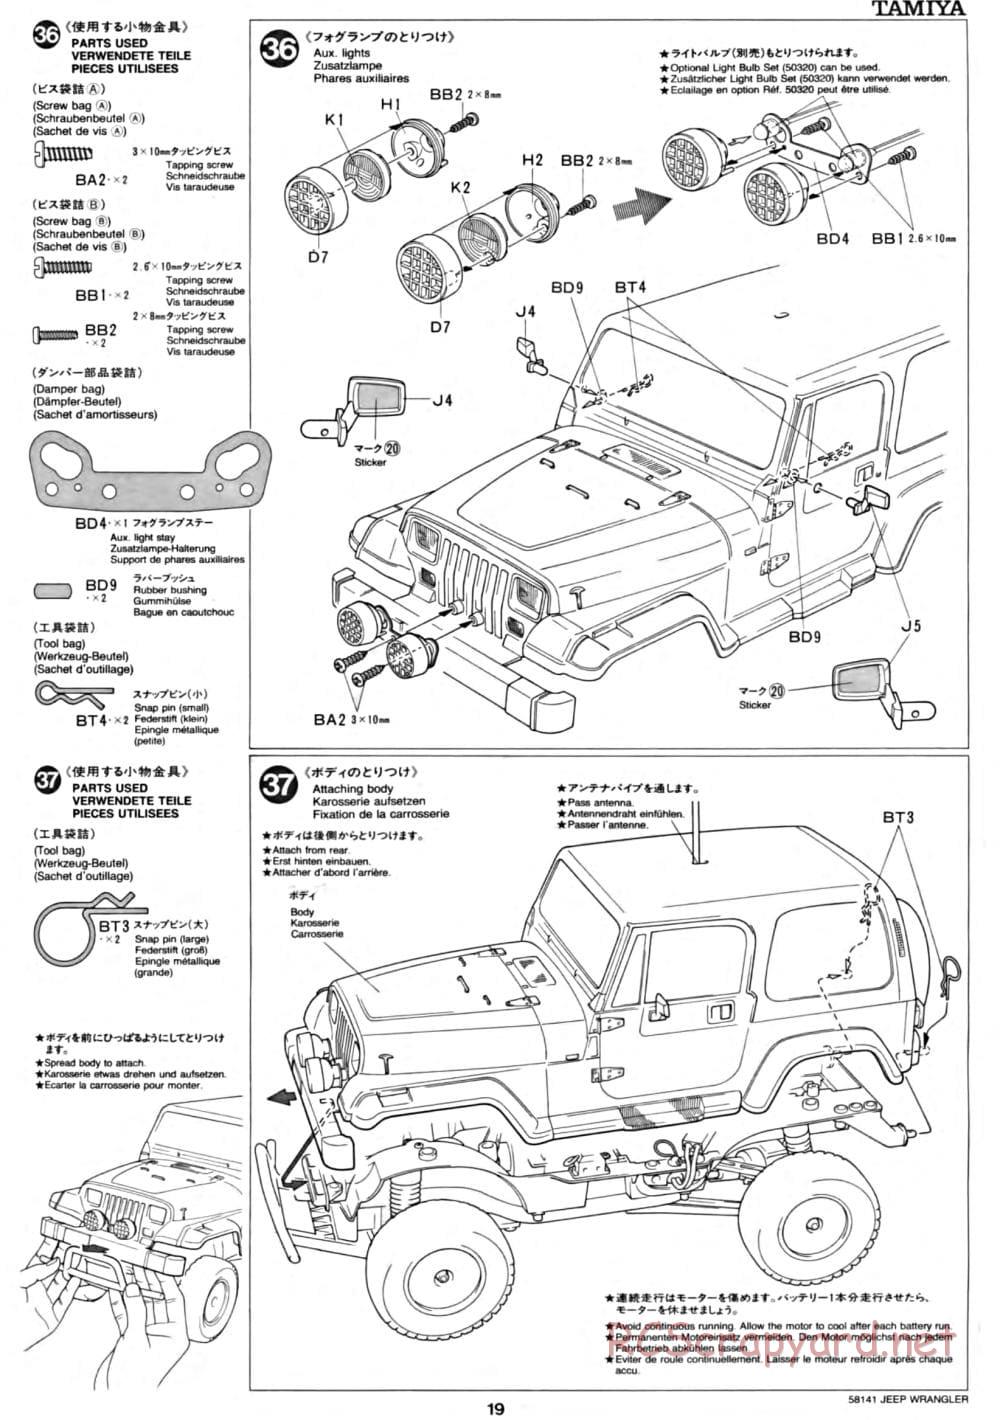 Tamiya - Jeep Wrangler - CC-01 Chassis - Manual - Page 19